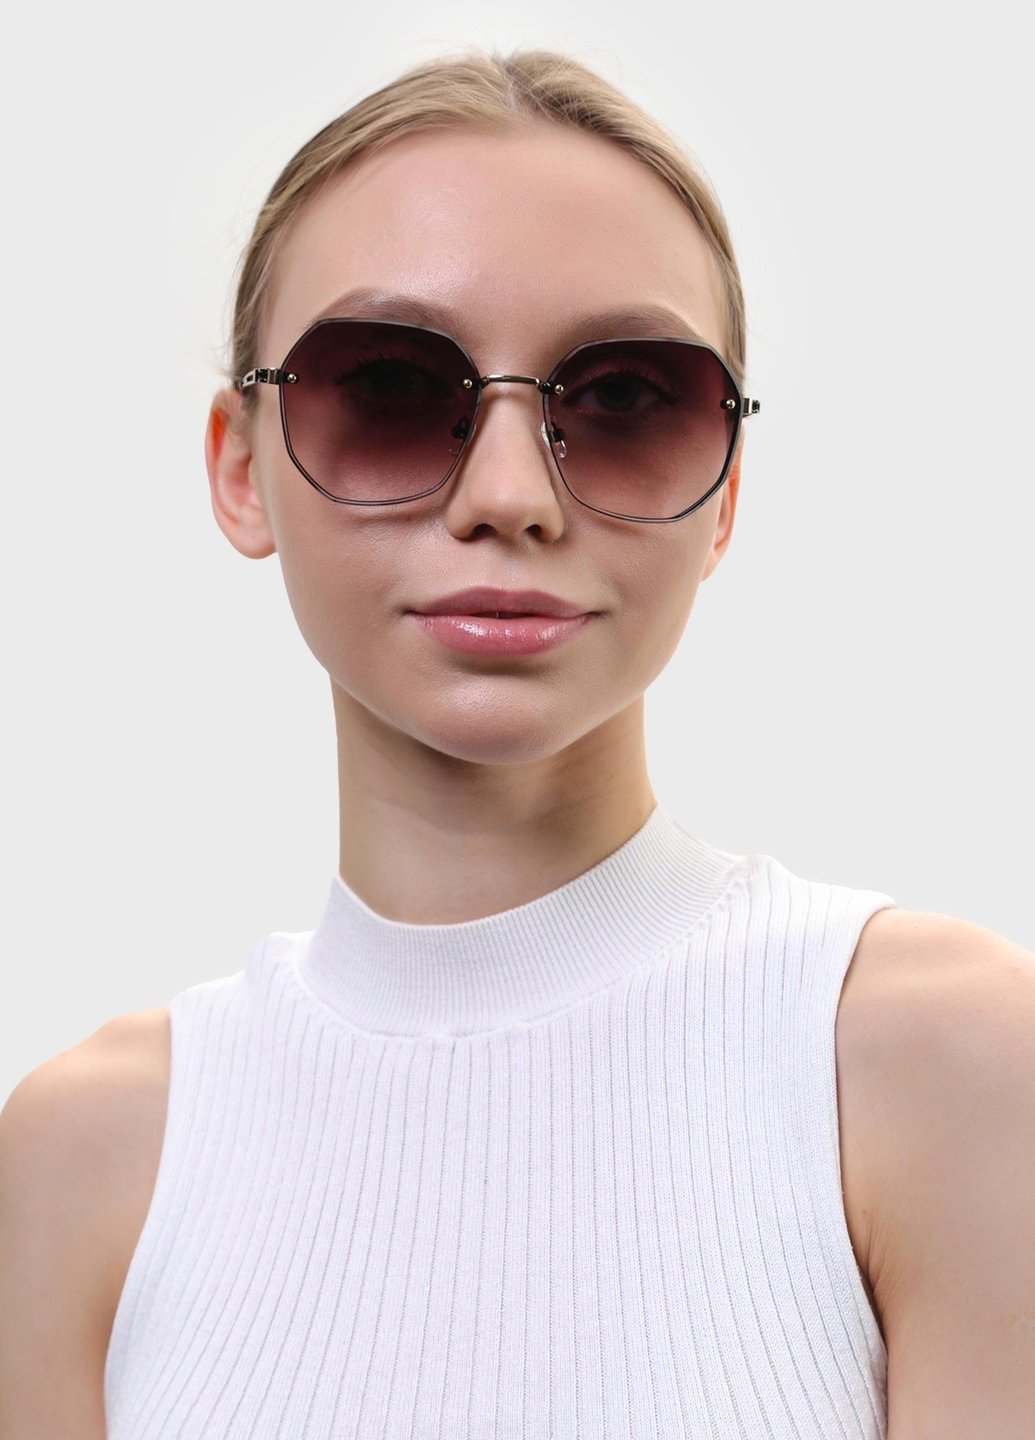 Купить Женские солнцезащитные очки Merlini с поляризацией S31817 117044 - Черный в интернет-магазине